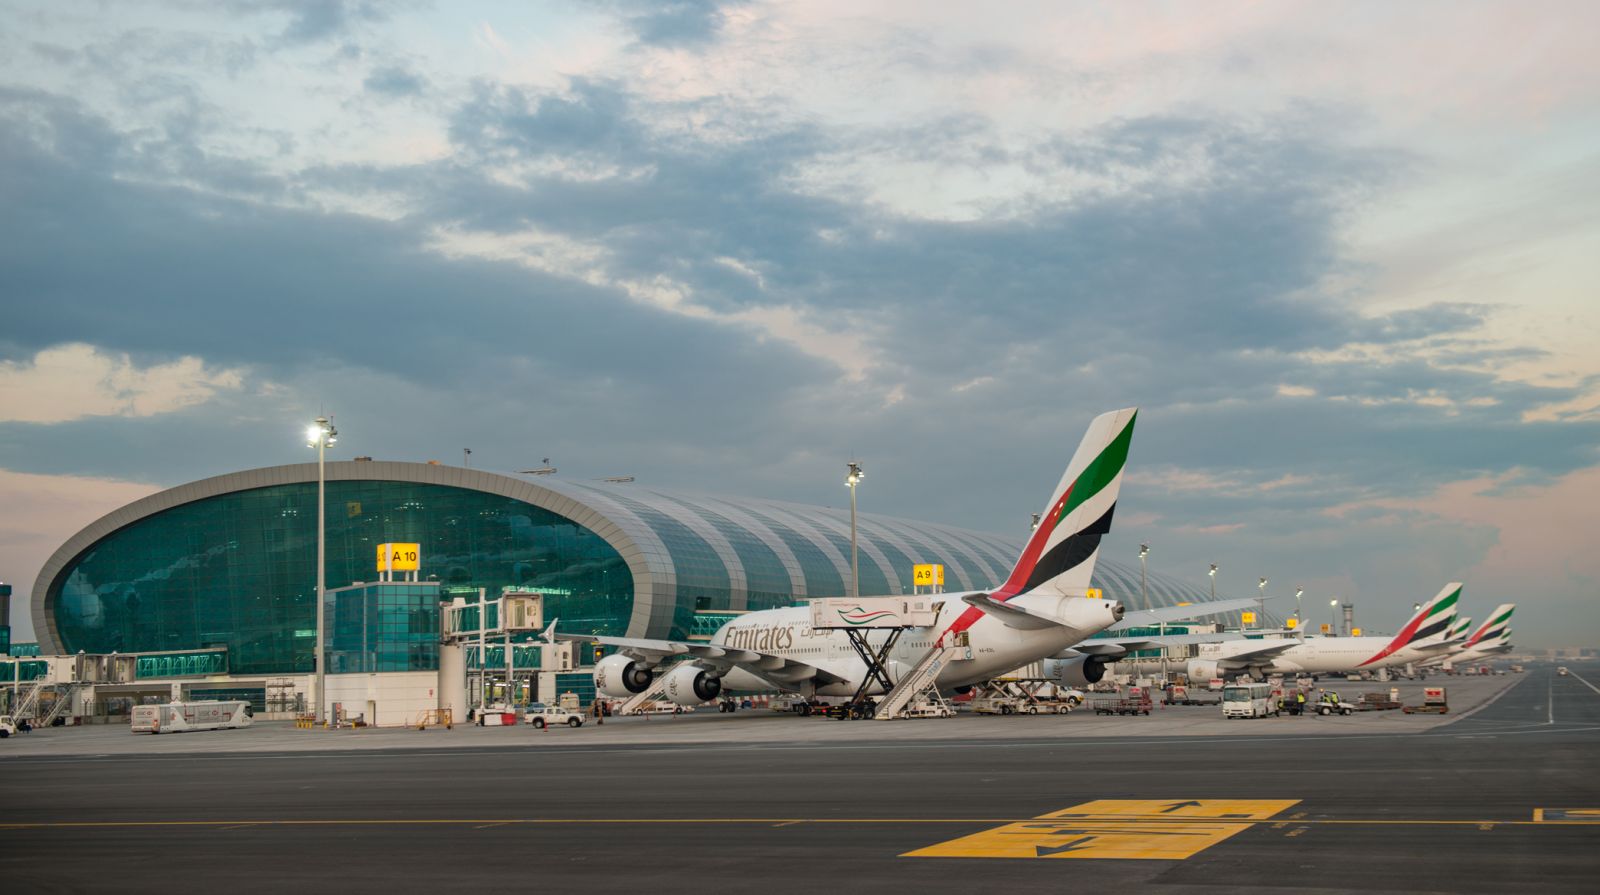 ايقاف الملاحة لبعض الوقت في مطار دبي بسبب طائرة بدون طيار